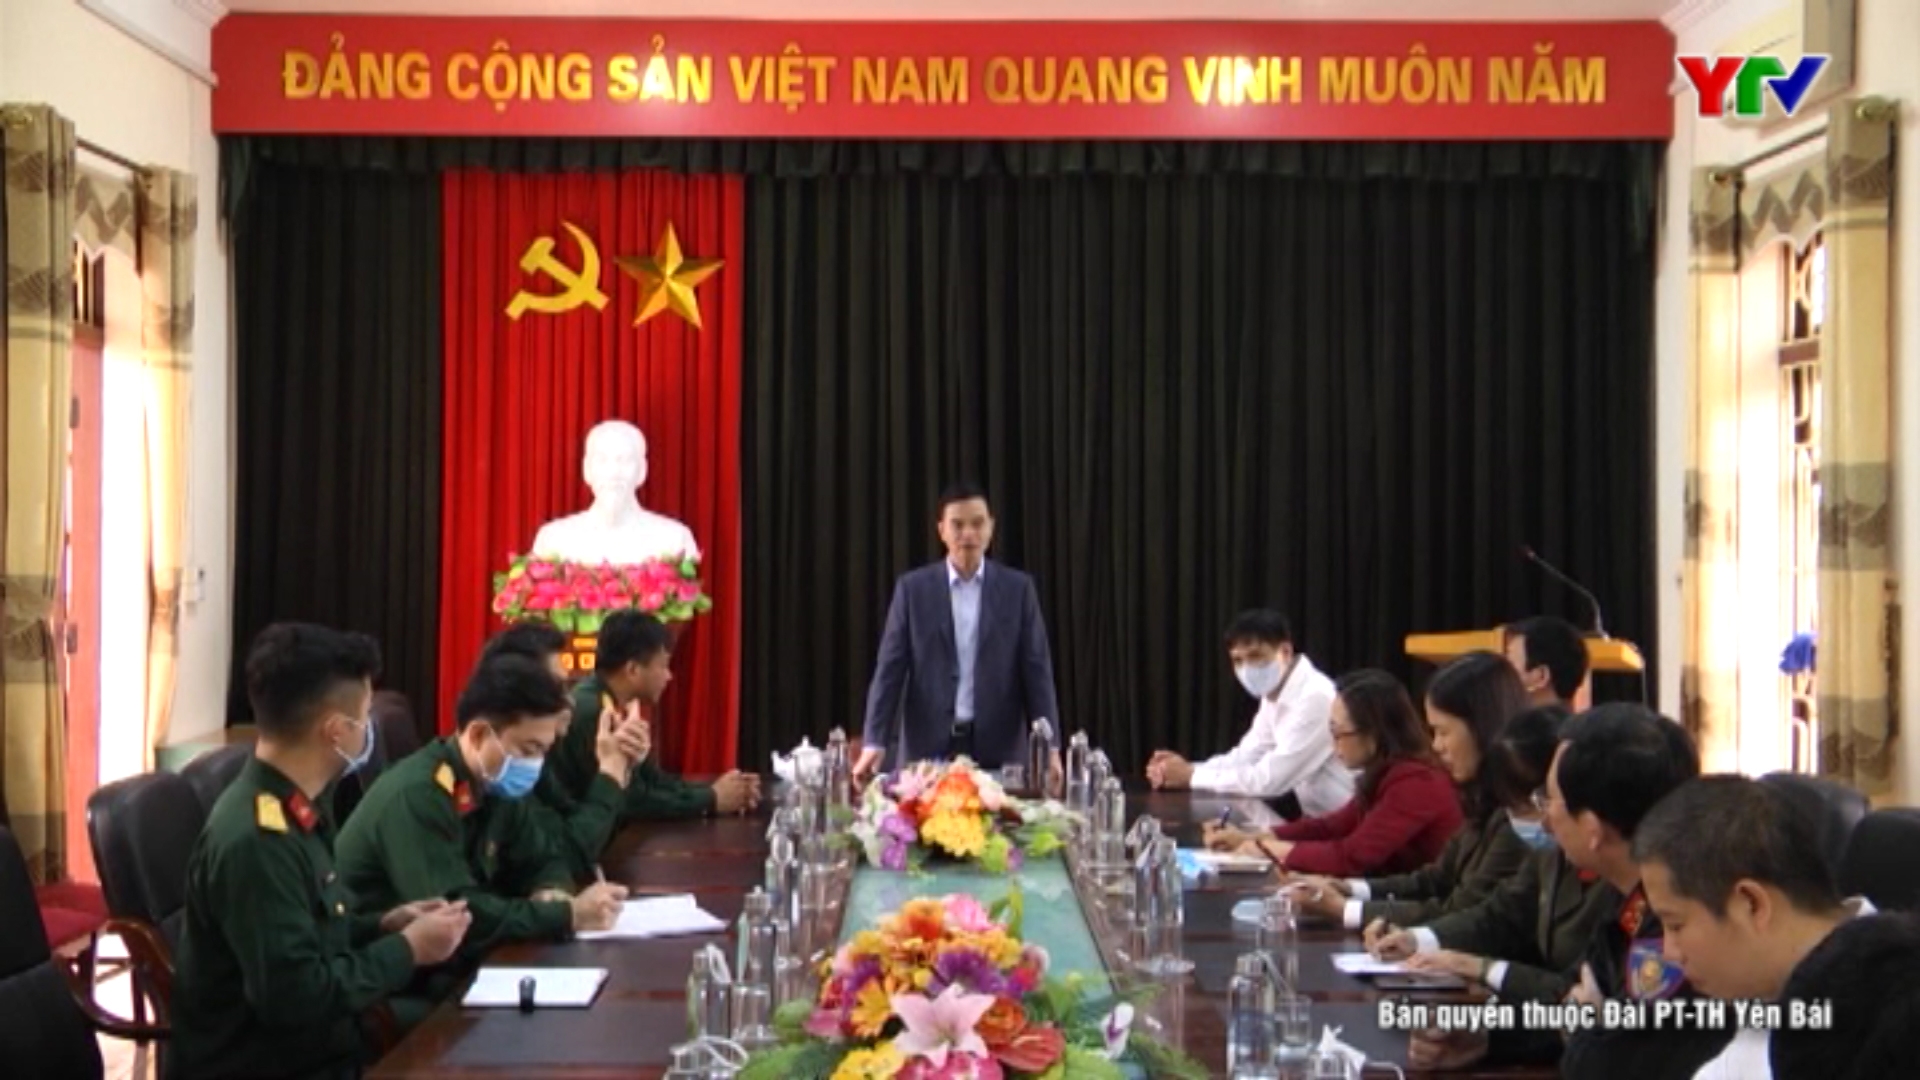 Đồng chí Phó Chủ tịch UBND tỉnh Dương Văn Tiến kiểm tra khu vực cách ly tại Trường Cao đẳng Nghề Yên Bái